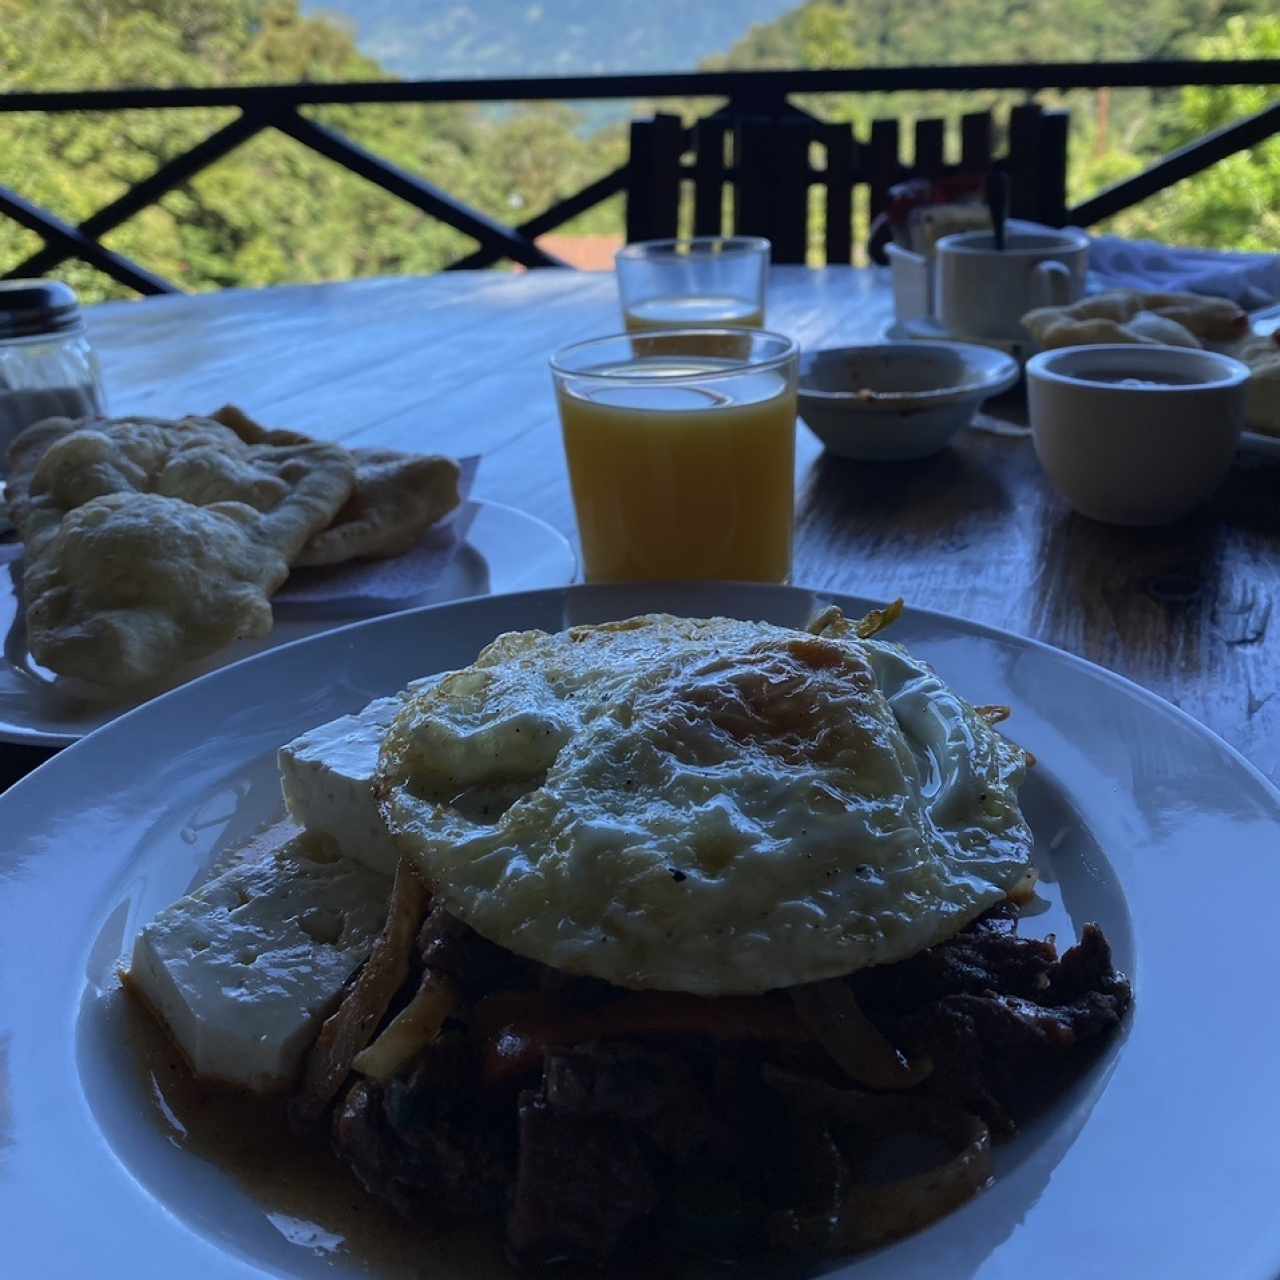 Desayuno tipico panameño 